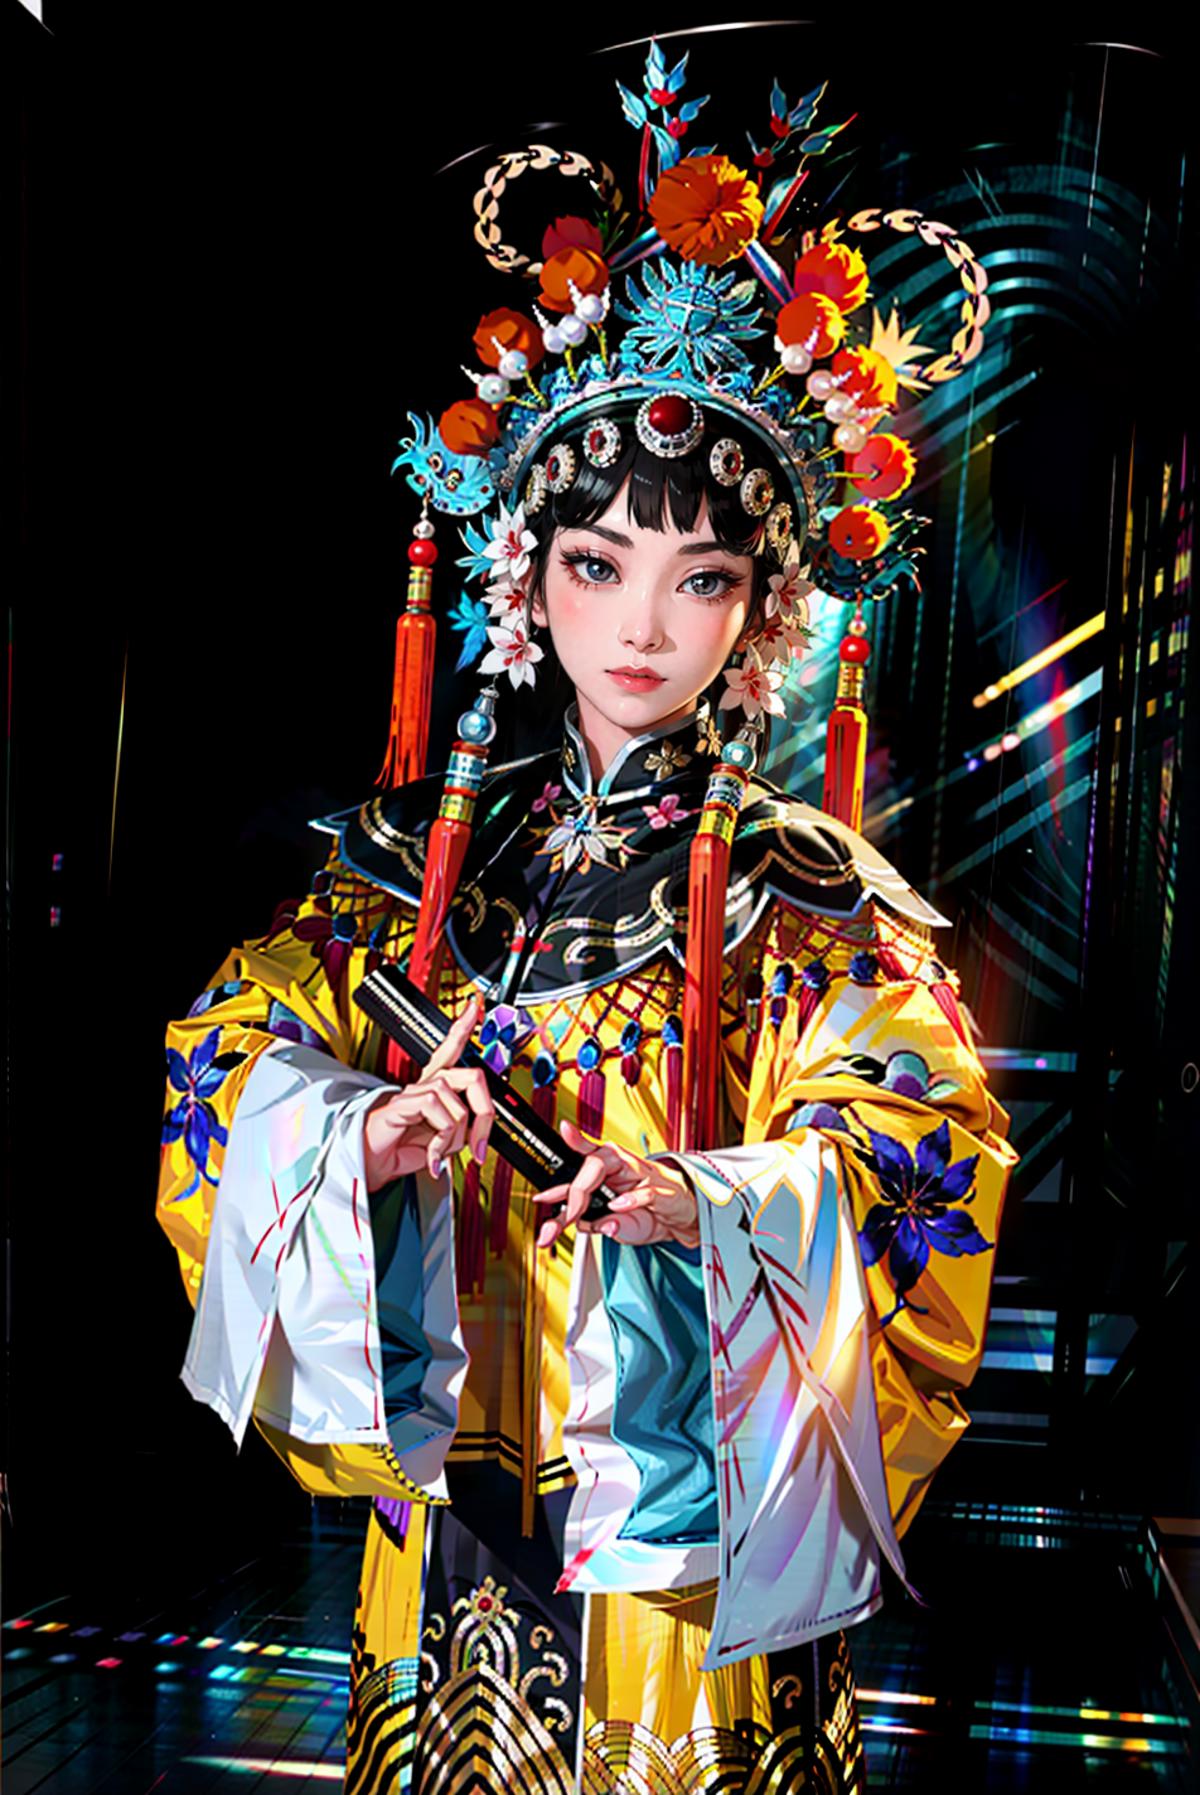 xifu 戏服(Chinese Peking Opera costumes) image by yoyochen2023